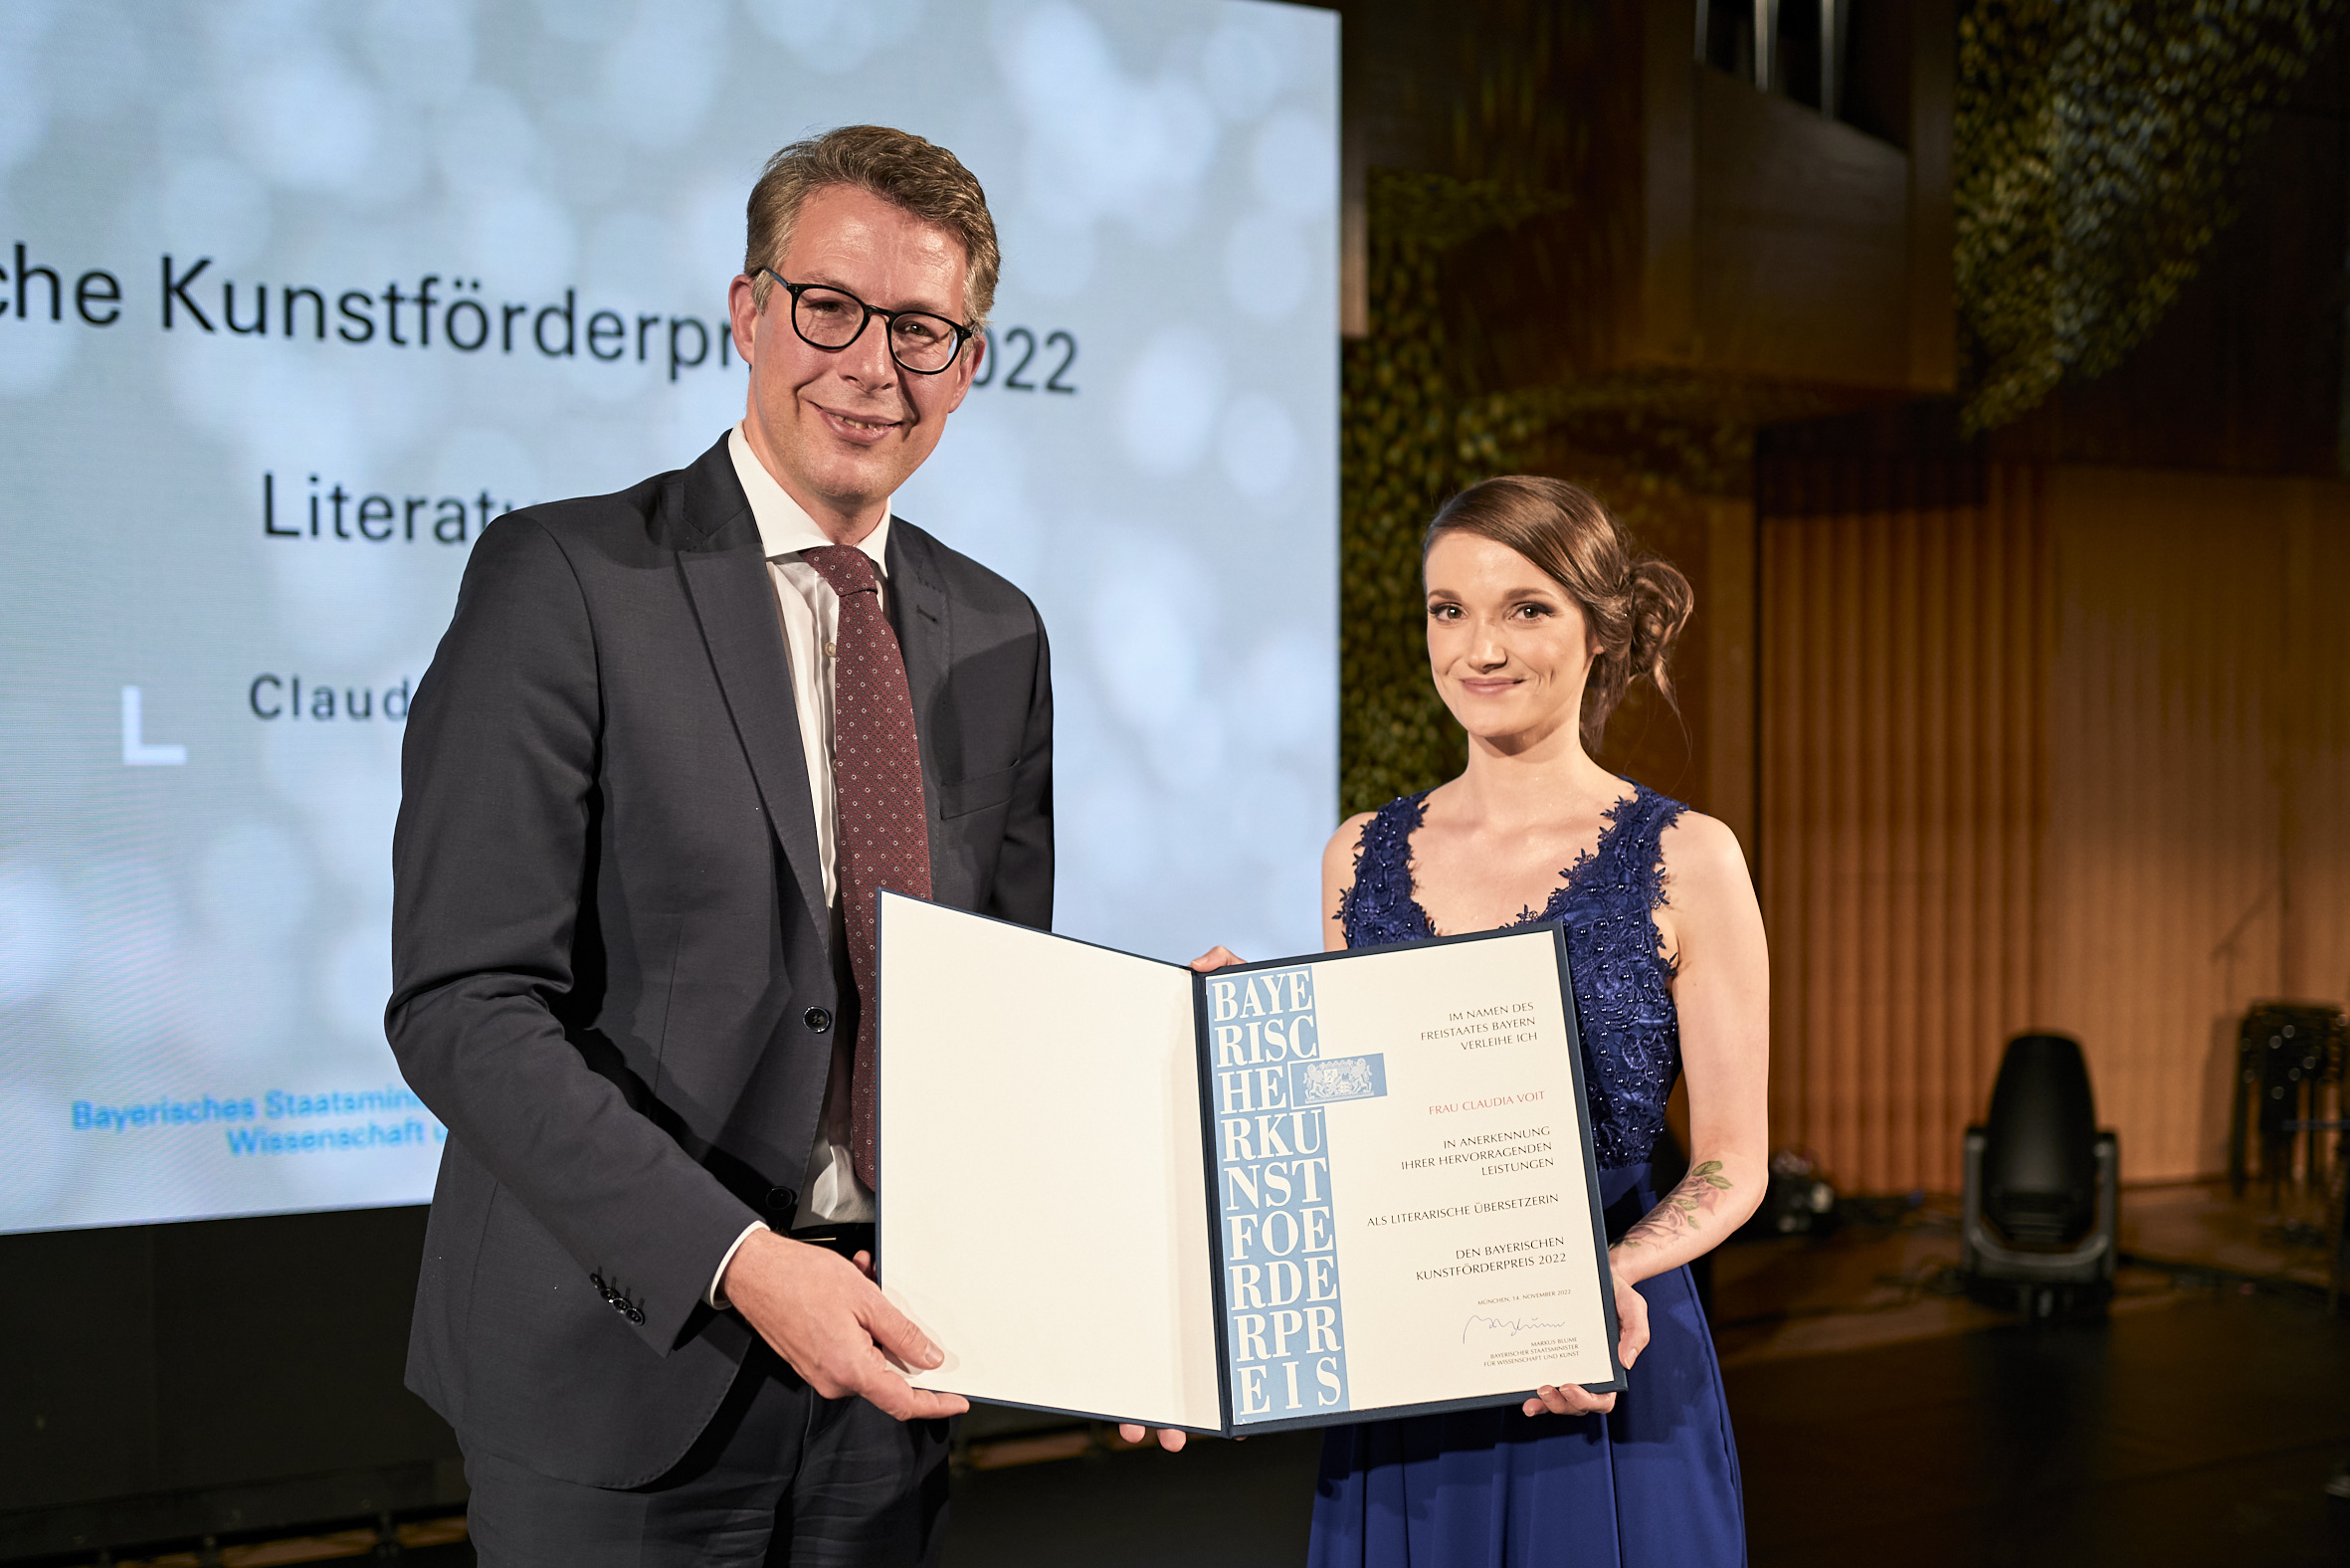 Die Übersetzerin Claudia Voit bekommt den Bayerischen Kunstförderpreis 2022 von Kunstminister Markus Blume verliehen